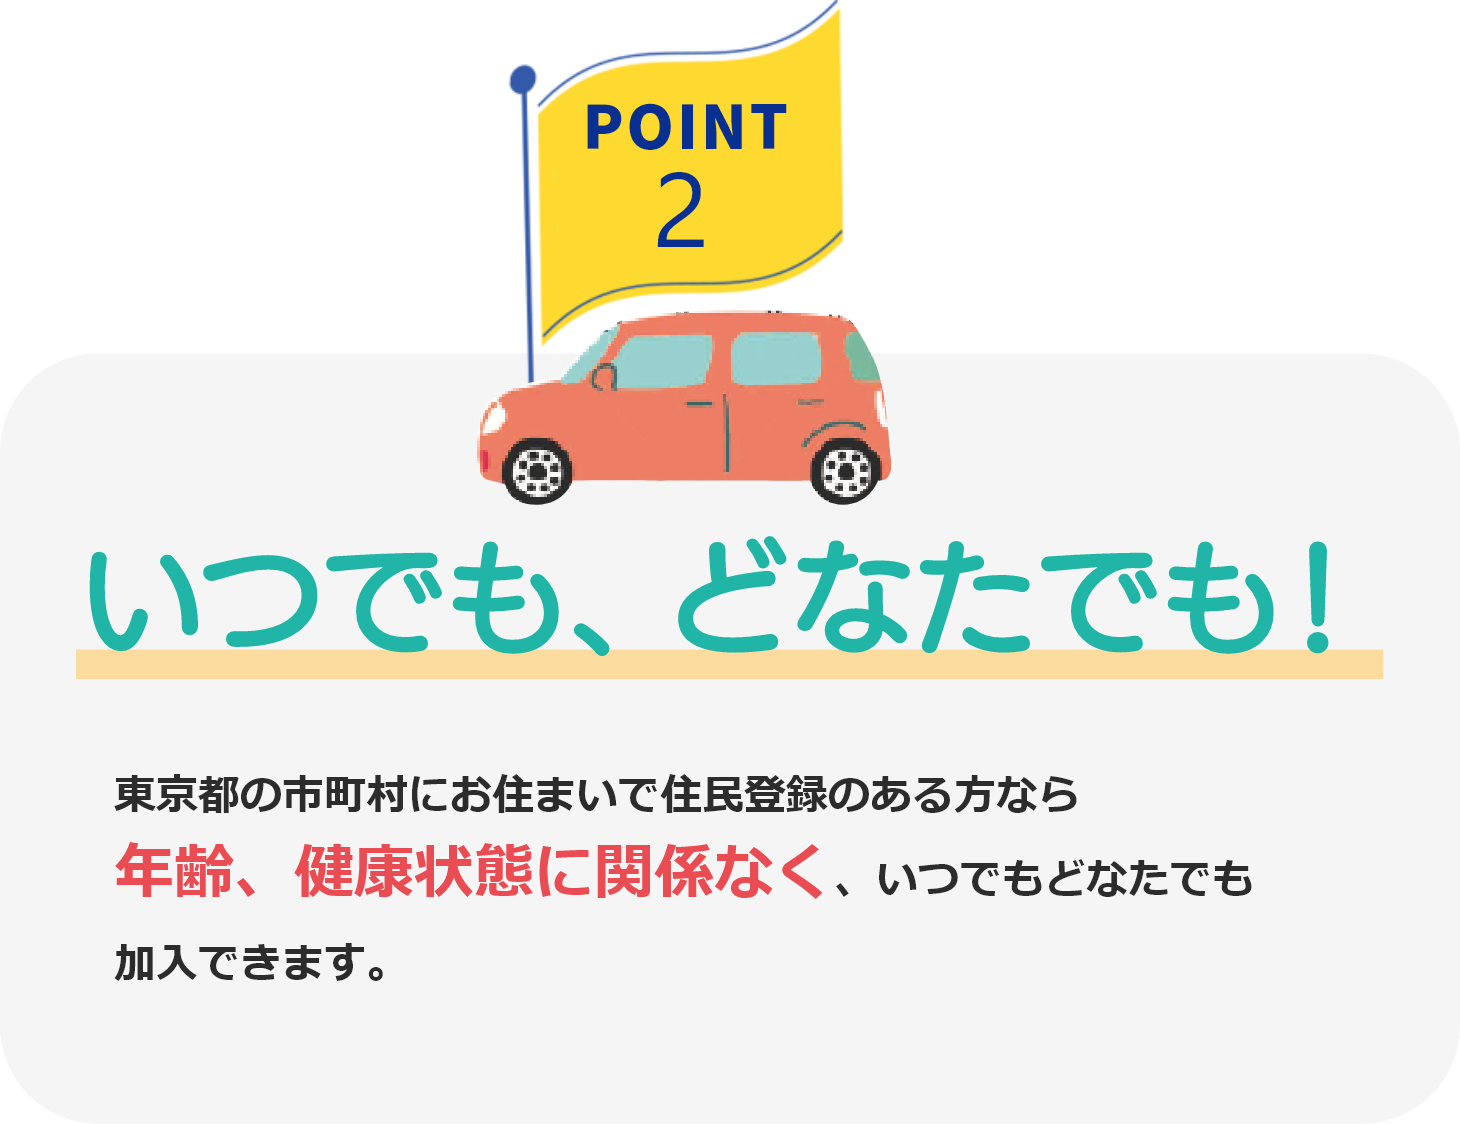 POINT2 いつでも、どなたでも! 東京都の市町村にお住まいで住民登録のある方なら年齢、健康状態に関係なく、いつでもどなたでも加入できます。